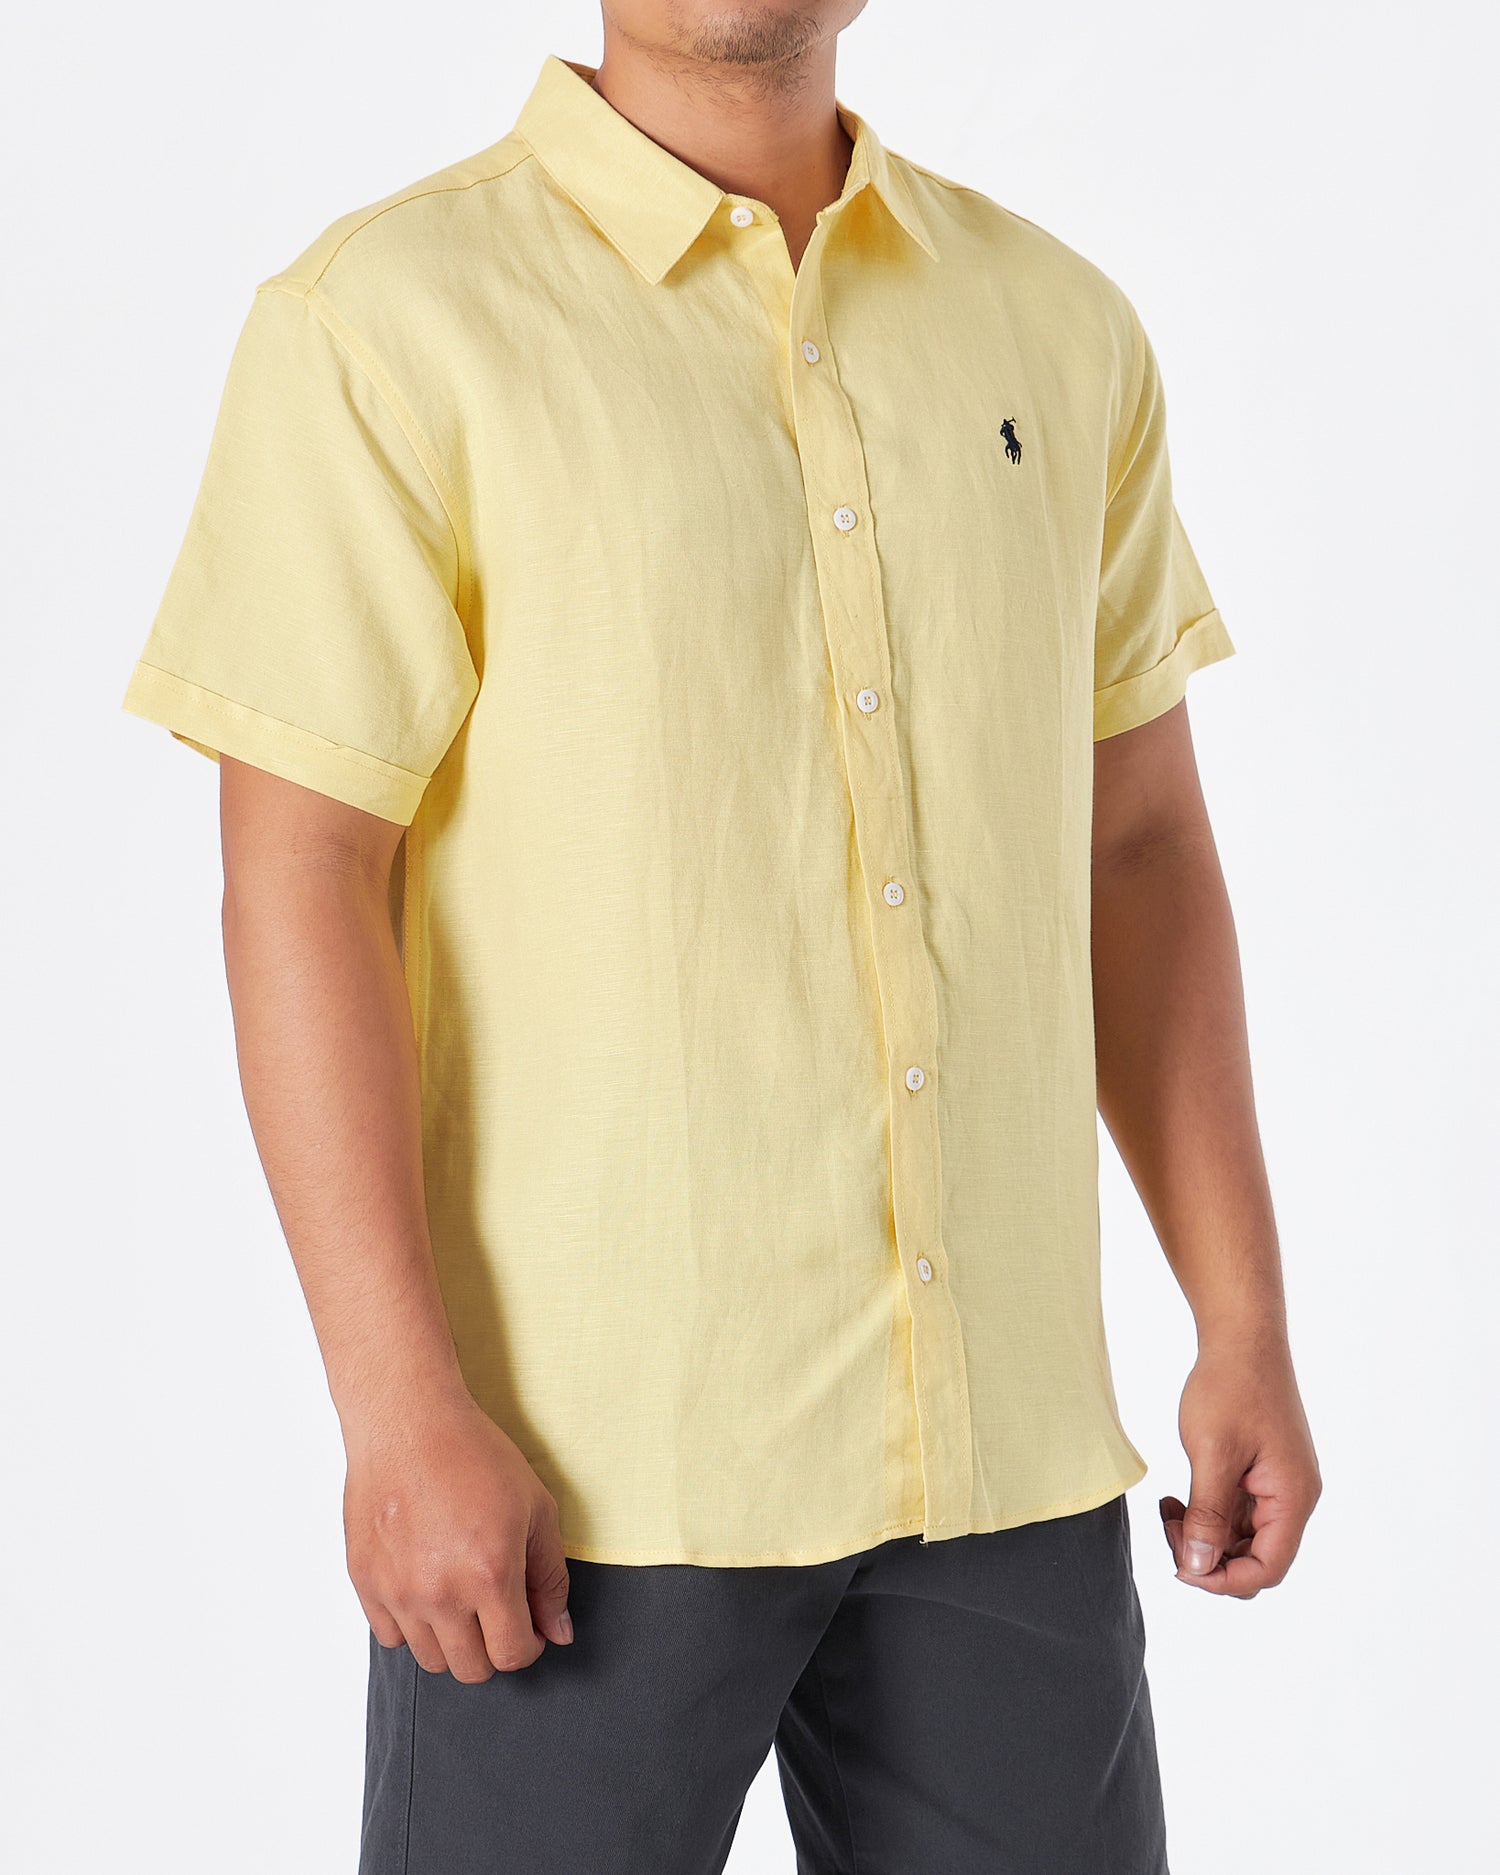 RL纯棉男式黄衬衫短袖28.90